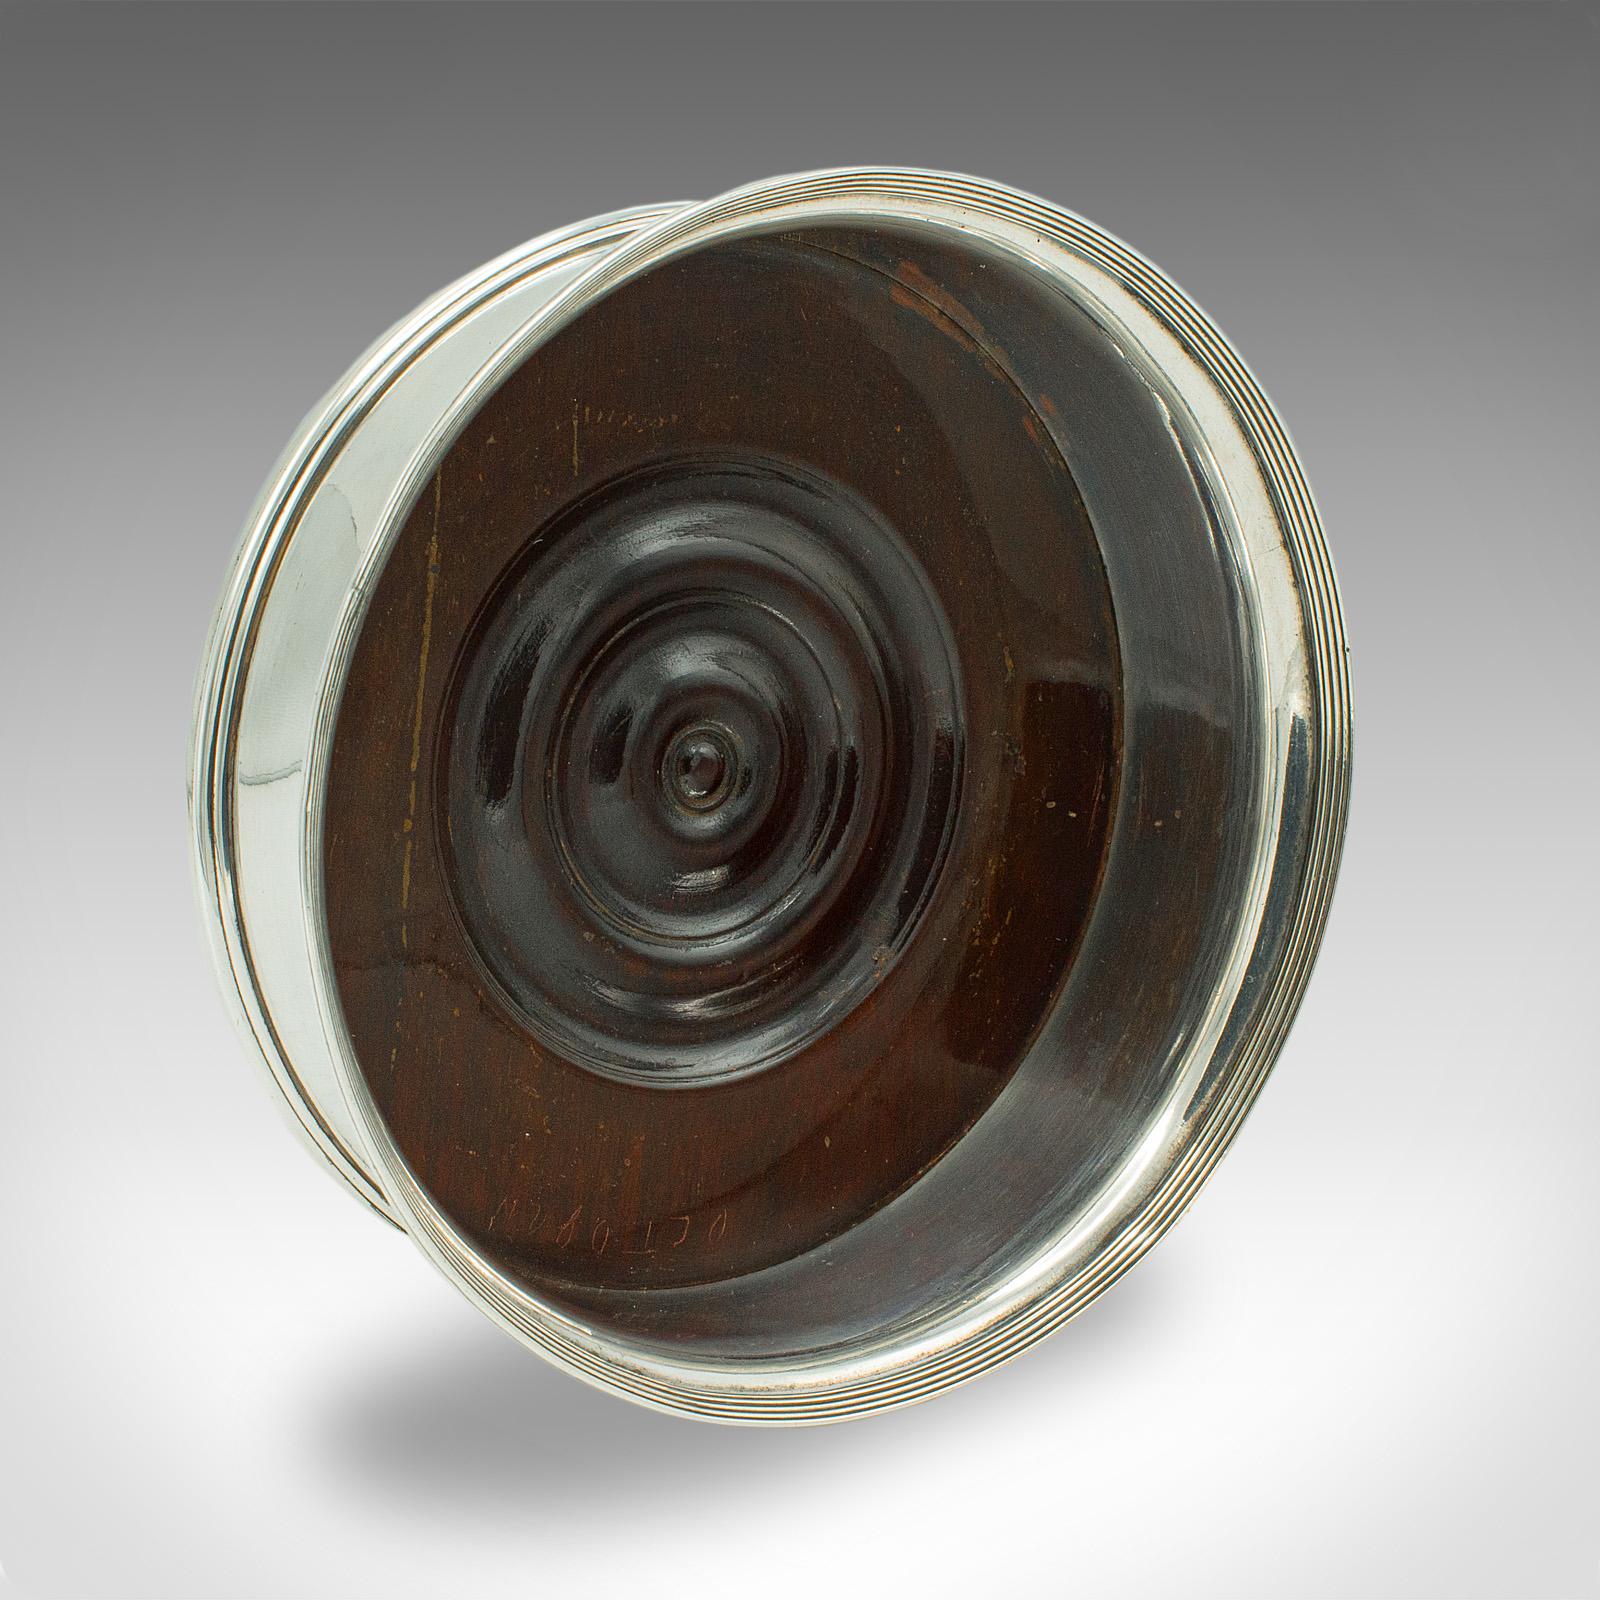 Il s'agit d'un sous-verre de bouteille de vin vintage. Porte-boissons décoratif anglais en métal argenté et en noyer, datant du début du 20e siècle, vers 1930.

Joli sous-verre du début du 20e siècle, idéal pour accueillir une bouteille de